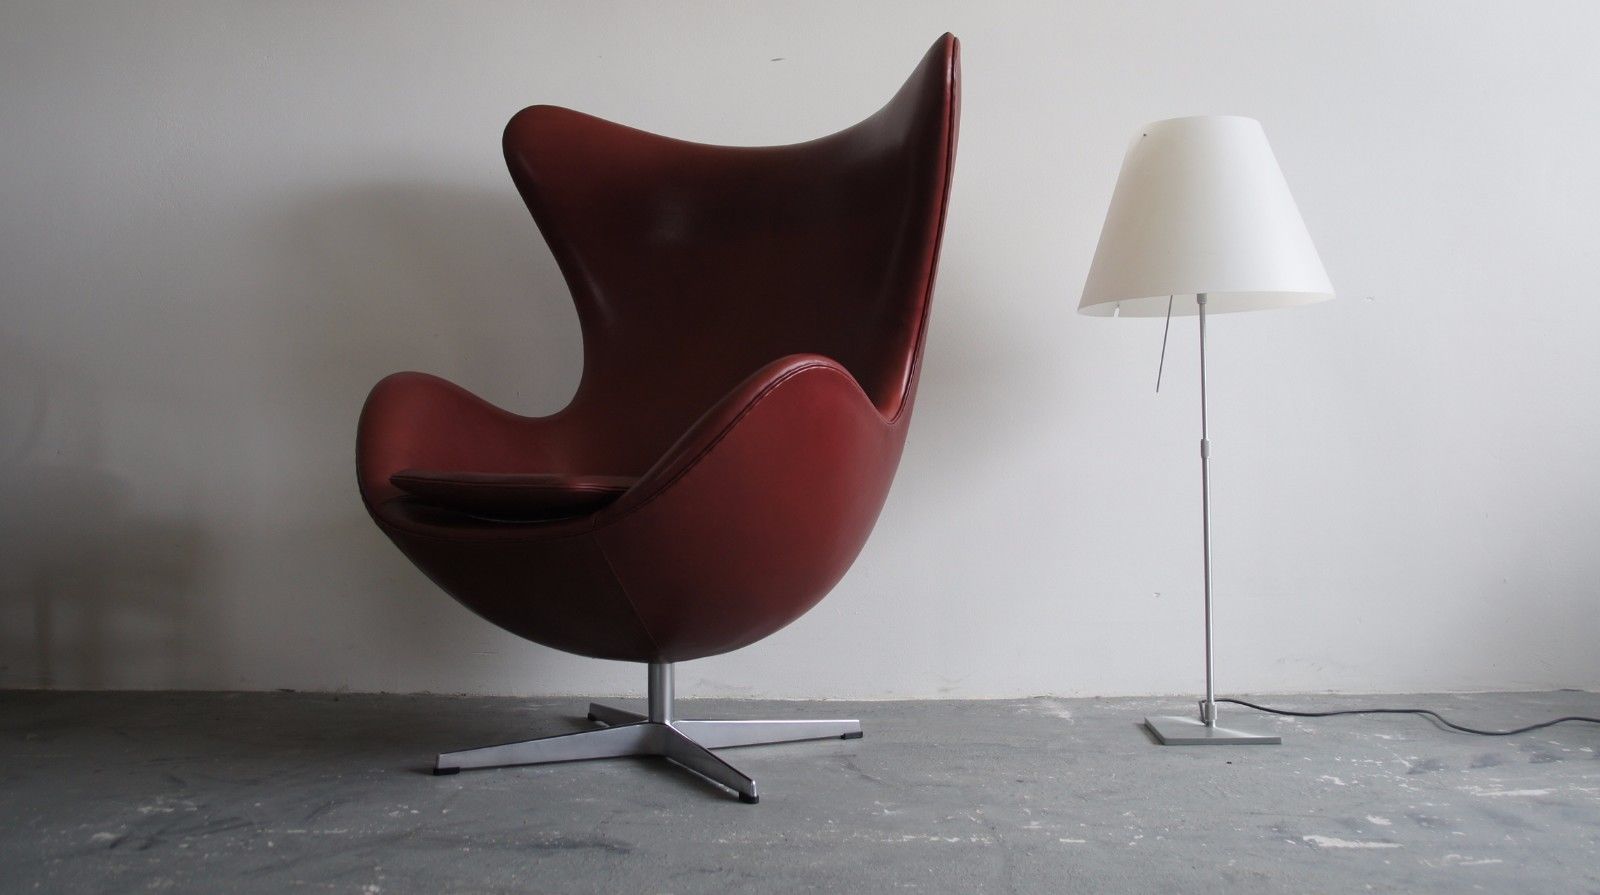 Une sélection des plus beaux fauteuils oeuf récemment vendus sur eBay !